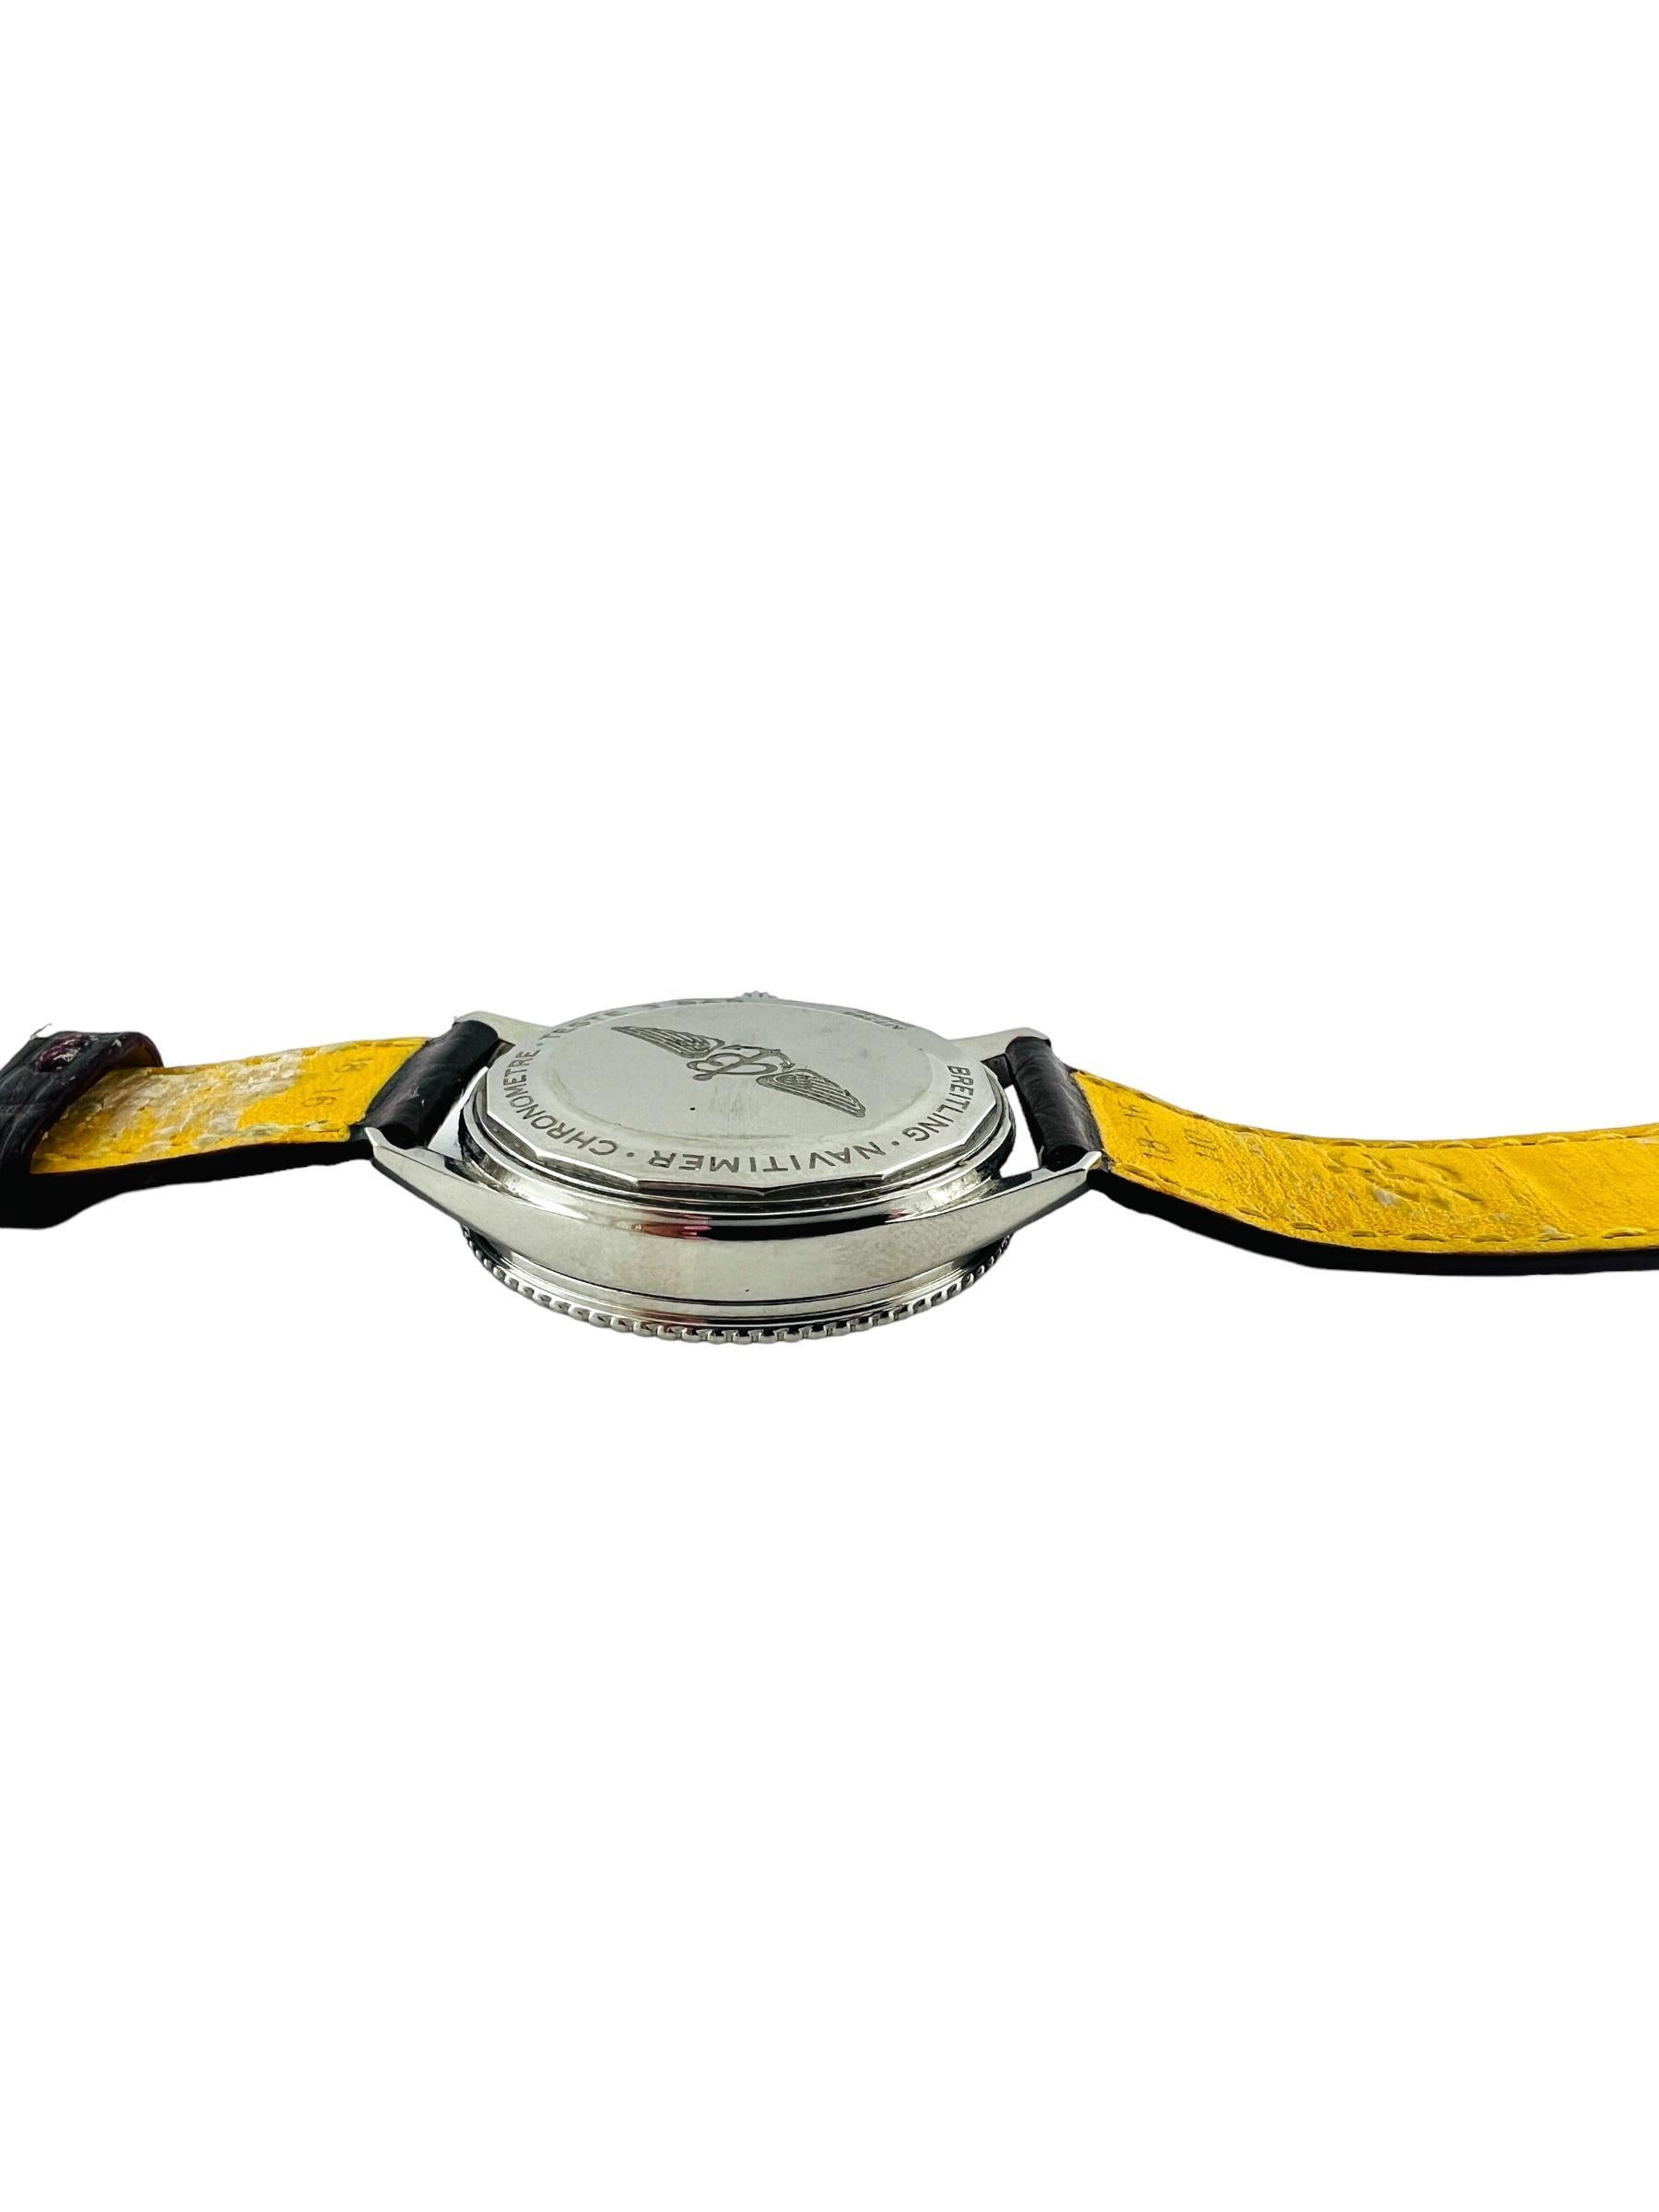 Breitling Navitimer Chronometer Automatik Herrenuhr

Modell: A17395
Seriennummer: 6456986

Diese Breilting Navitimer hat ein Edelstahlgehäuse mit einem Breitling burgunderroten Armband mit Faltschließe

Ca. 9 3/4